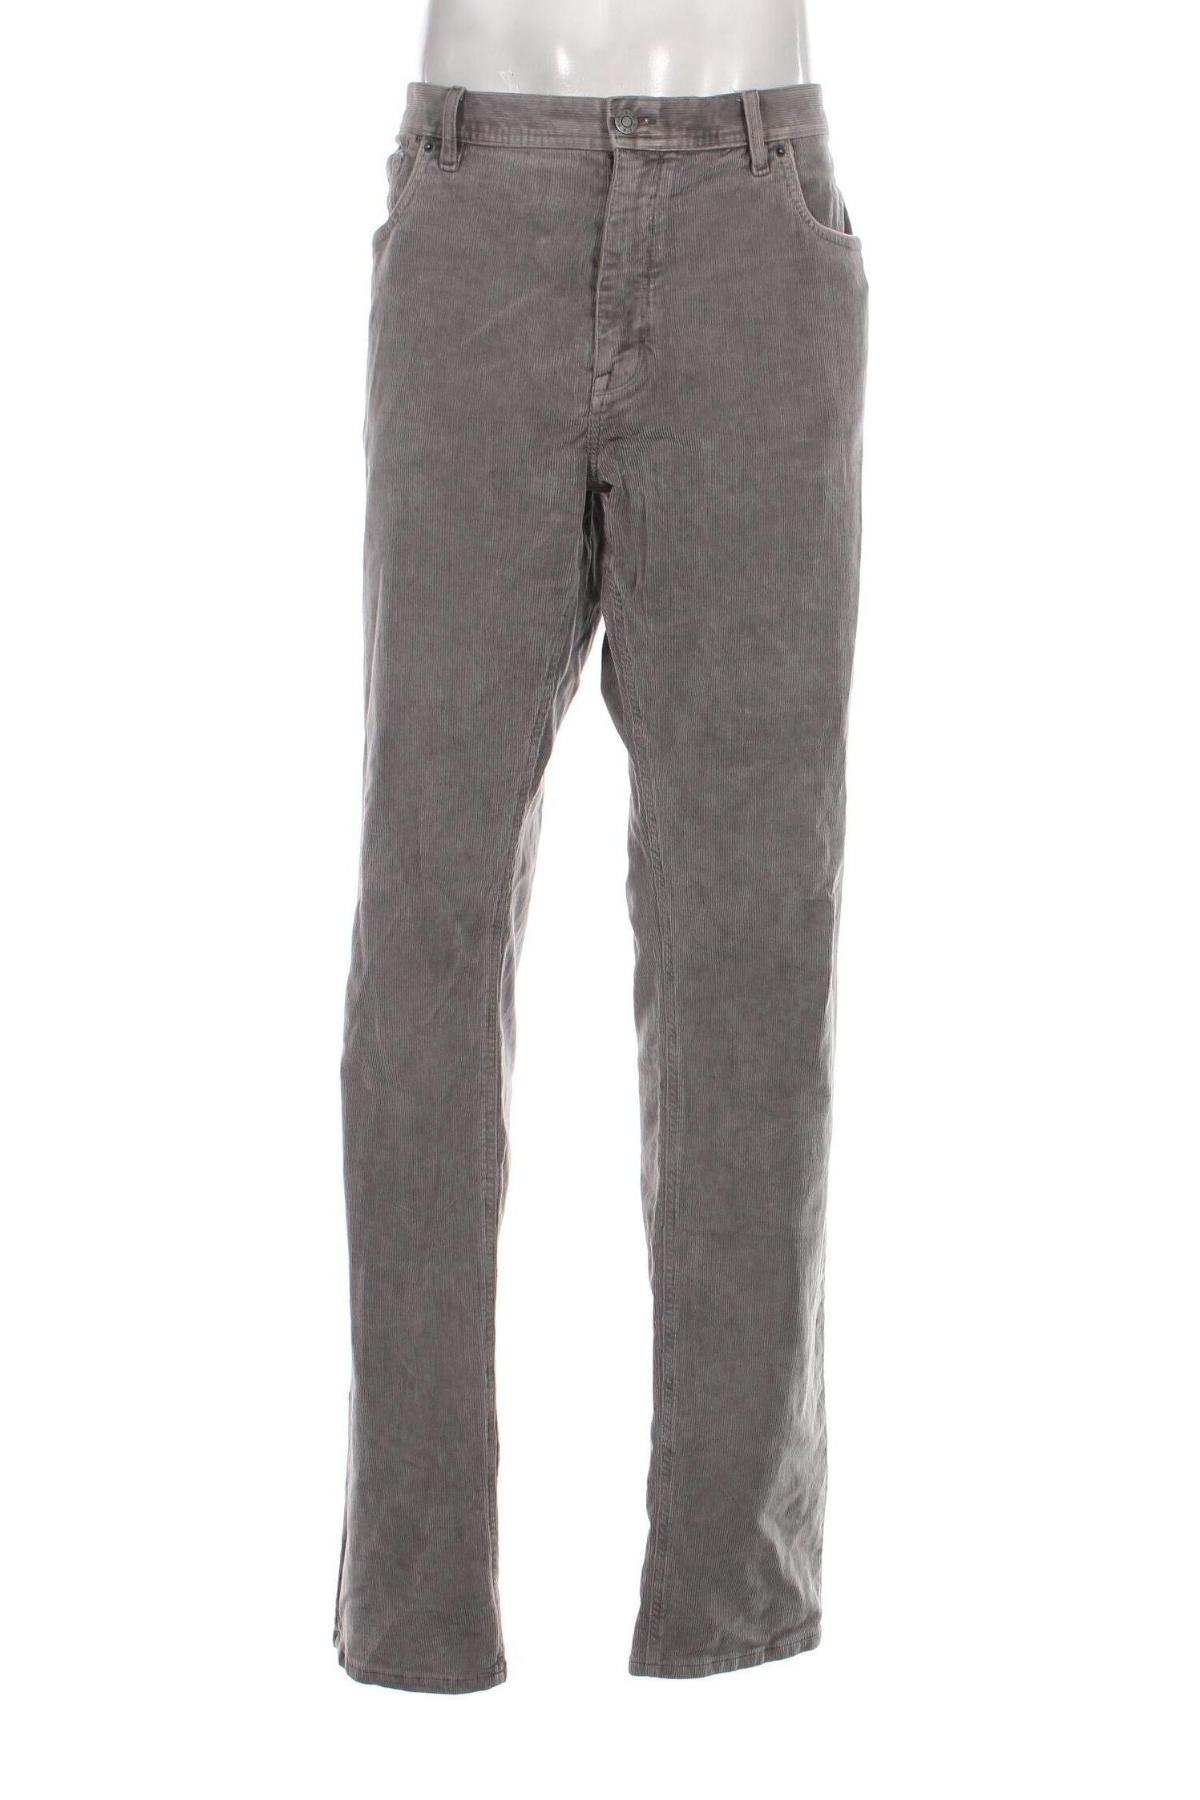 Pantaloni raiați de bărbați S.Oliver, Mărime 3XL, Culoare Gri, Preț 130,82 Lei